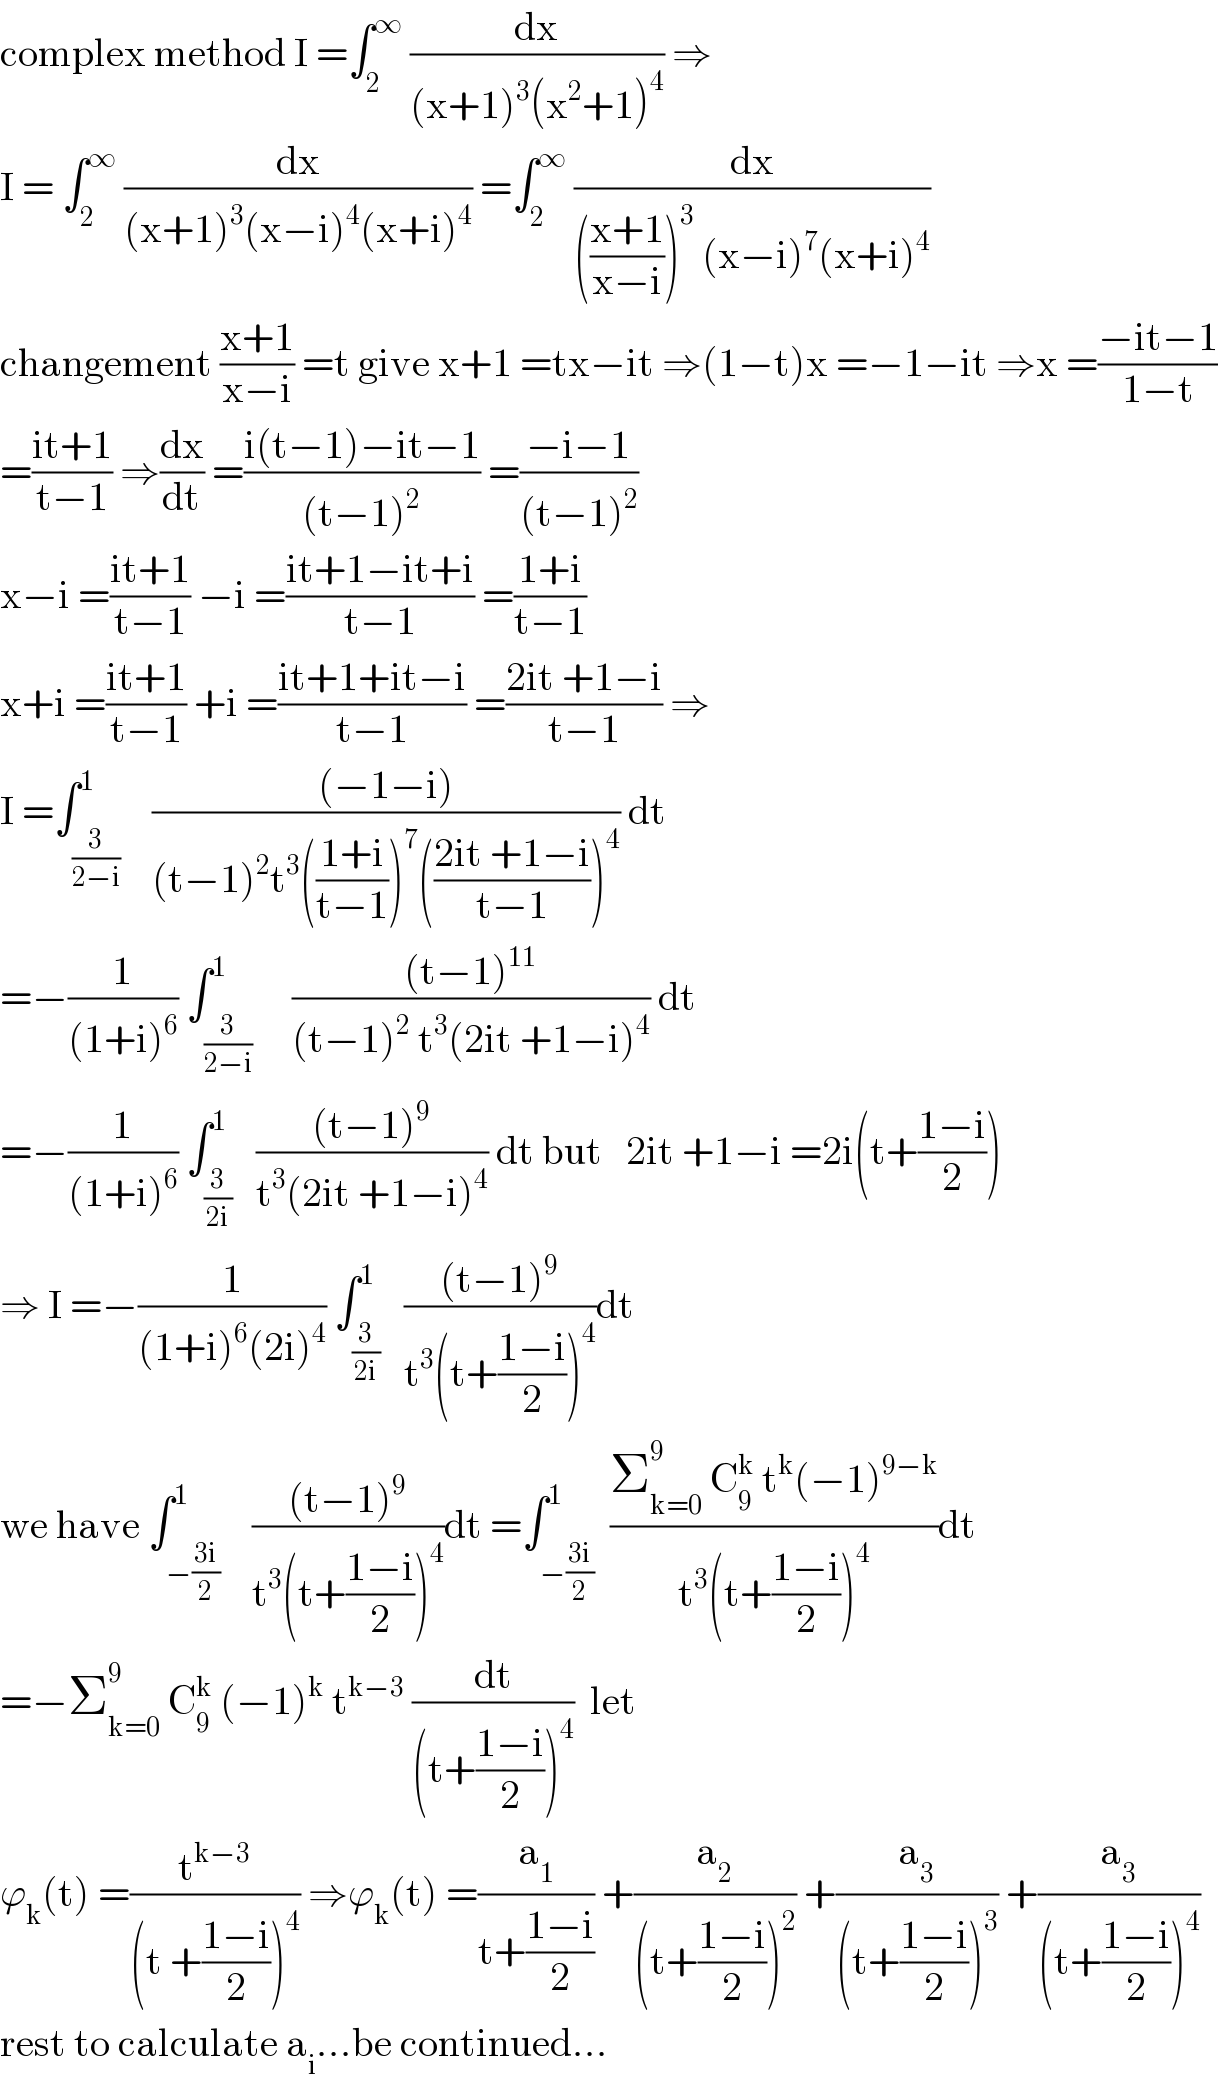 complex method I =∫_2 ^∞  (dx/((x+1)^3 (x^2 +1)^4 )) ⇒  I = ∫_2 ^∞  (dx/((x+1)^3 (x−i)^4 (x+i)^4 )) =∫_2 ^∞  (dx/((((x+1)/(x−i)))^3  (x−i)^7 (x+i)^4 ))  changement ((x+1)/(x−i)) =t give x+1 =tx−it ⇒(1−t)x =−1−it ⇒x =((−it−1)/(1−t))  =((it+1)/(t−1)) ⇒(dx/dt) =((i(t−1)−it−1)/((t−1)^2 )) =((−i−1)/((t−1)^2 ))  x−i =((it+1)/(t−1)) −i =((it+1−it+i)/(t−1)) =((1+i)/(t−1))  x+i =((it+1)/(t−1)) +i =((it+1+it−i)/(t−1)) =((2it +1−i)/(t−1)) ⇒  I =∫_(3/(2−i)) ^1    (((−1−i))/((t−1)^2 t^3 (((1+i)/(t−1)))^7 (((2it +1−i)/(t−1)))^4 )) dt  =−(1/((1+i)^6 )) ∫_(3/(2−i)) ^1     (((t−1)^(11) )/((t−1)^2  t^3 (2it +1−i)^4 )) dt  =−(1/((1+i)^6 )) ∫_(3/(2i)) ^1   (((t−1)^9 )/(t^3 (2it +1−i)^4 )) dt but   2it +1−i =2i(t+((1−i)/2))  ⇒ I =−(1/((1+i)^6 (2i)^4 )) ∫_(3/(2i)) ^1   (((t−1)^9 )/(t^3 (t+((1−i)/2))^4 ))dt  we have ∫_(−((3i)/2)) ^1    (((t−1)^9 )/(t^3 (t+((1−i)/2))^4 ))dt =∫_(−((3i)/2)) ^1  ((Σ_(k=0) ^9  C_9 ^k  t^k (−1)^(9−k) )/(t^3 (t+((1−i)/2))^4 ))dt  =−Σ_(k=0) ^9  C_9 ^k  (−1)^k  t^(k−3)  (dt/((t+((1−i)/2))^4 ))  let  ϕ_k (t) =(t^(k−3) /((t +((1−i)/2))^4 )) ⇒ϕ_k (t) =(a_1 /(t+((1−i)/2))) +(a_2 /((t+((1−i)/2))^2 )) +(a_3 /((t+((1−i)/2))^3 )) +(a_3 /((t+((1−i)/2))^4 ))  rest to calculate a_i ...be continued...  